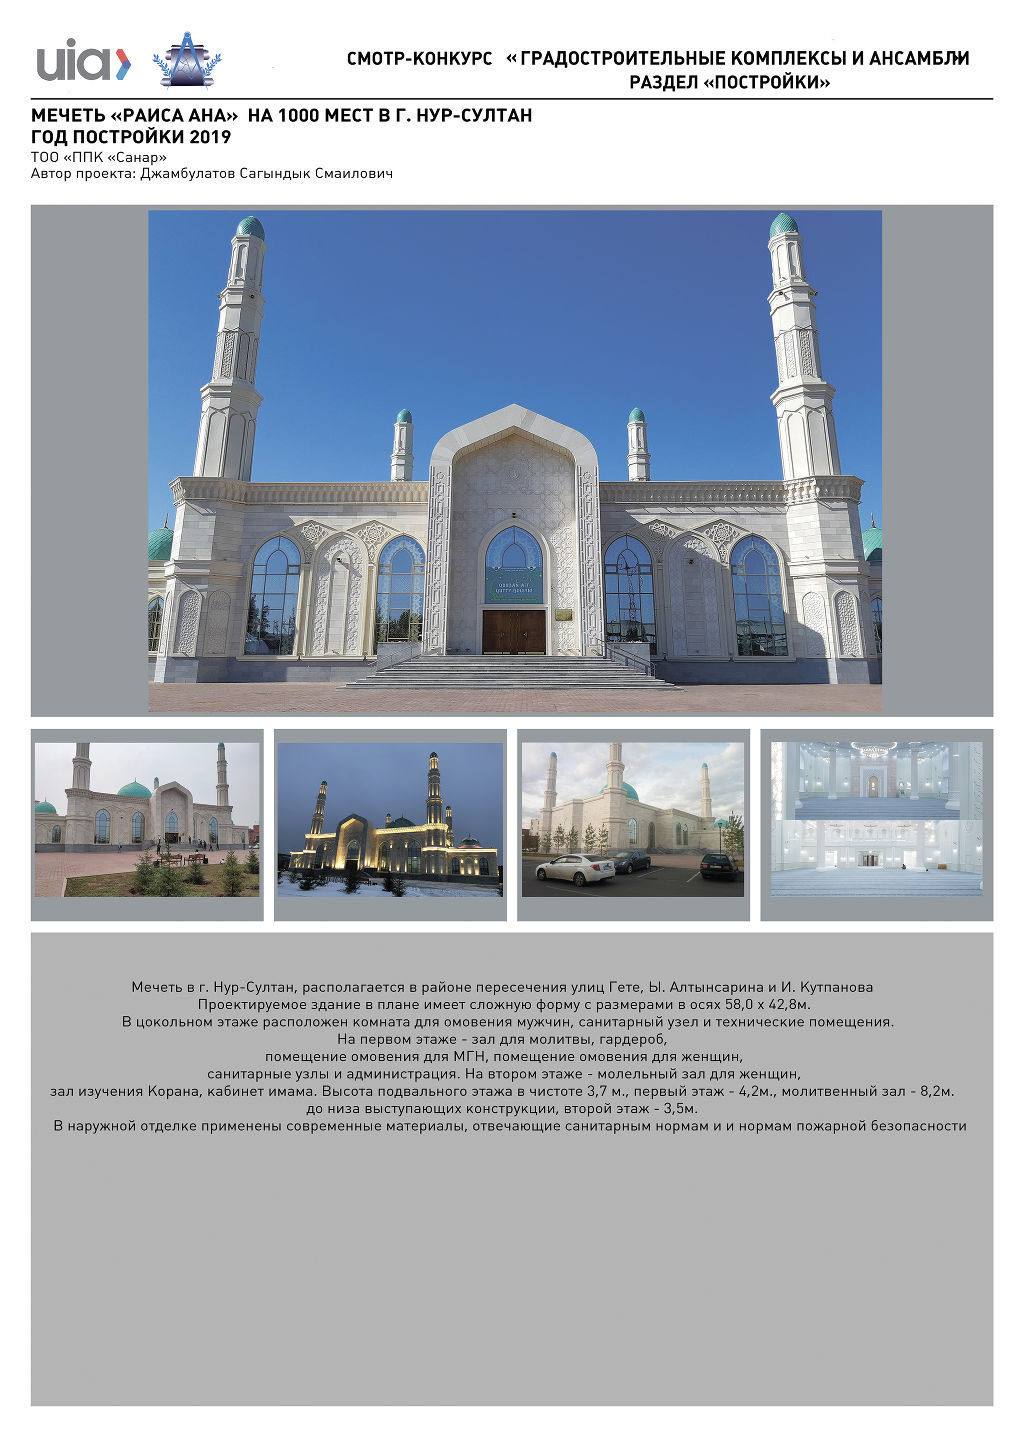 96.Мечеть �РАИСА АНА� на 1000 мест в г.Нур-Султан, год постройки 2019